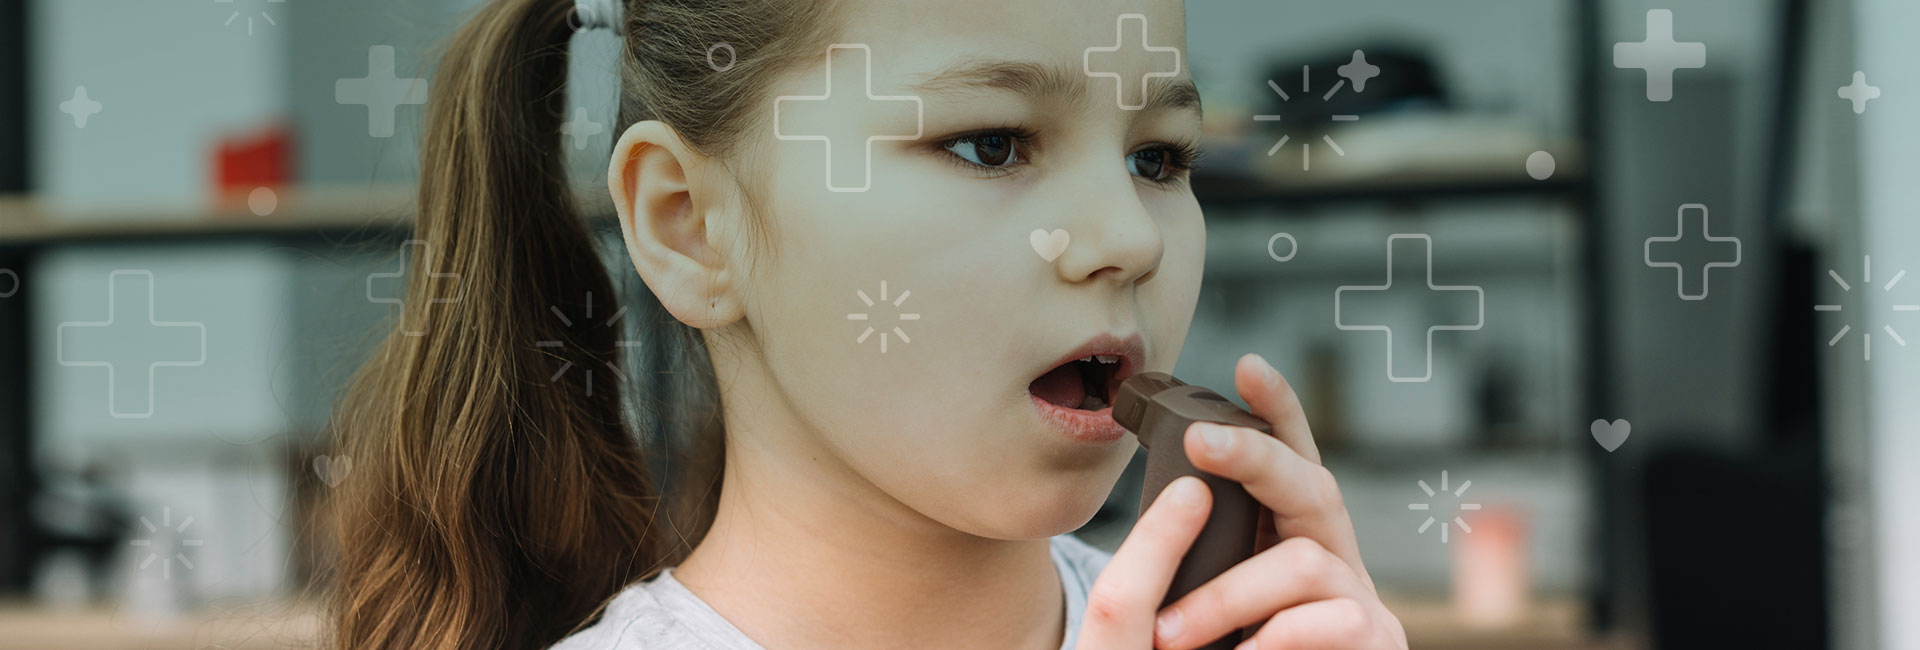 asma la enfermedad crónica más frecuente en los niños